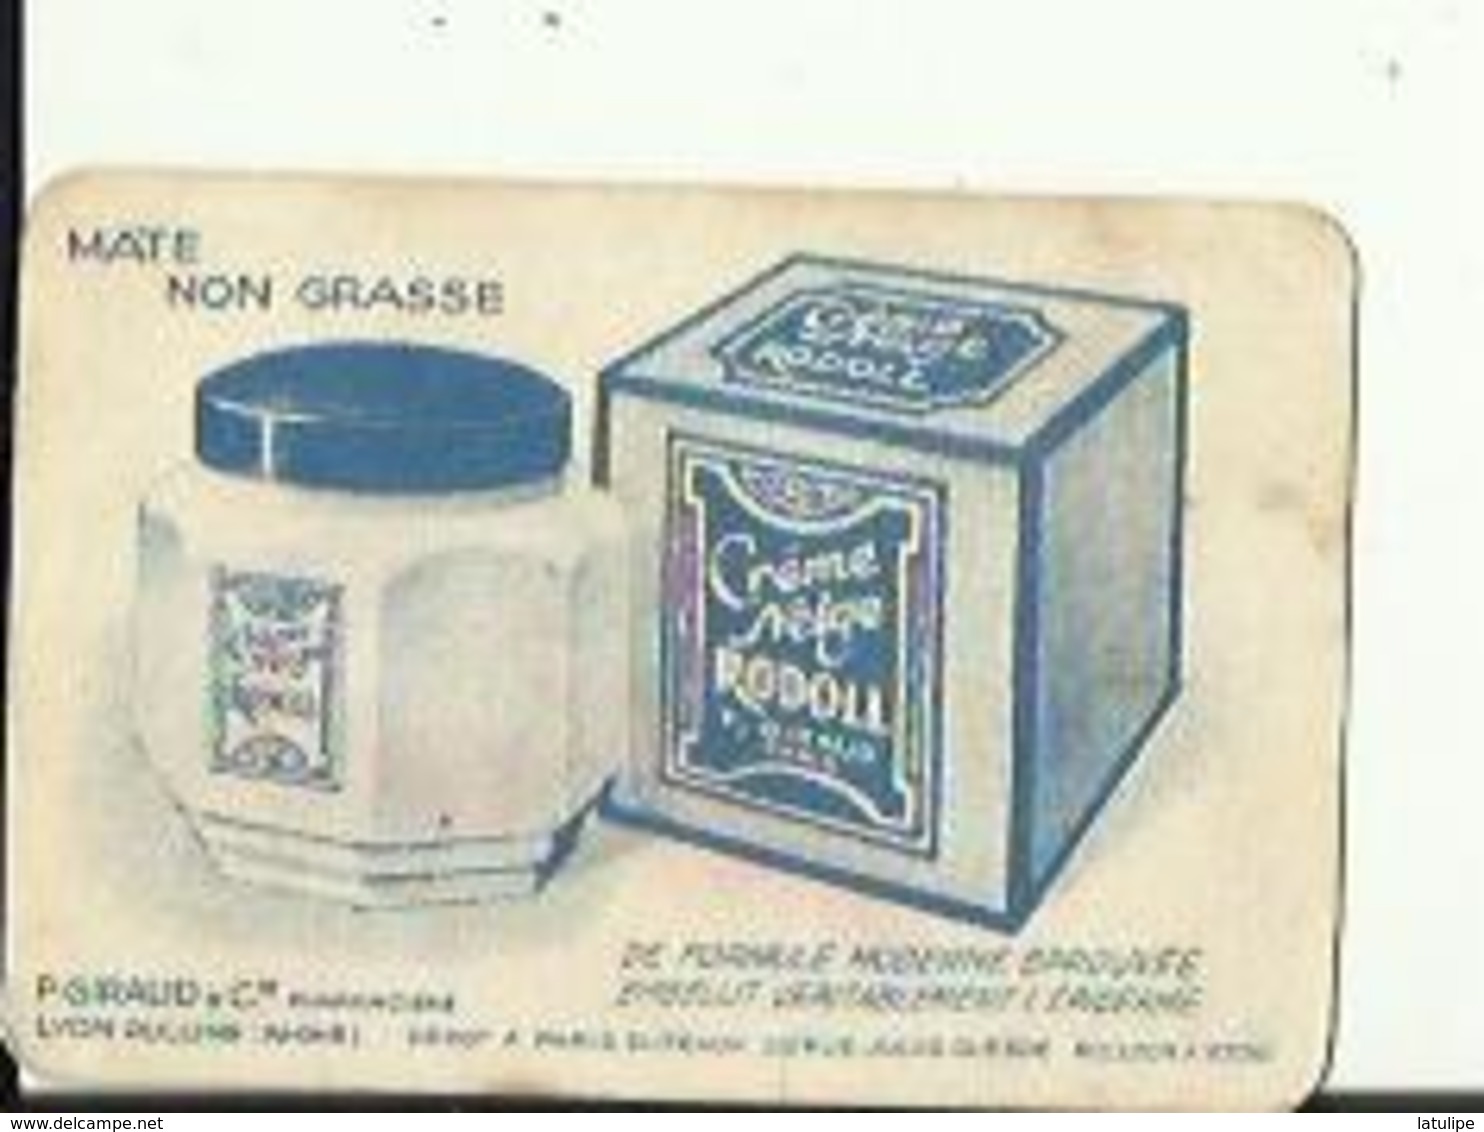 Petite  Carte De Creme Neige Et Savon  RODOLL De P  GIRAUD&Cie Pharmacien A OULLINS 69 - Beauty Products